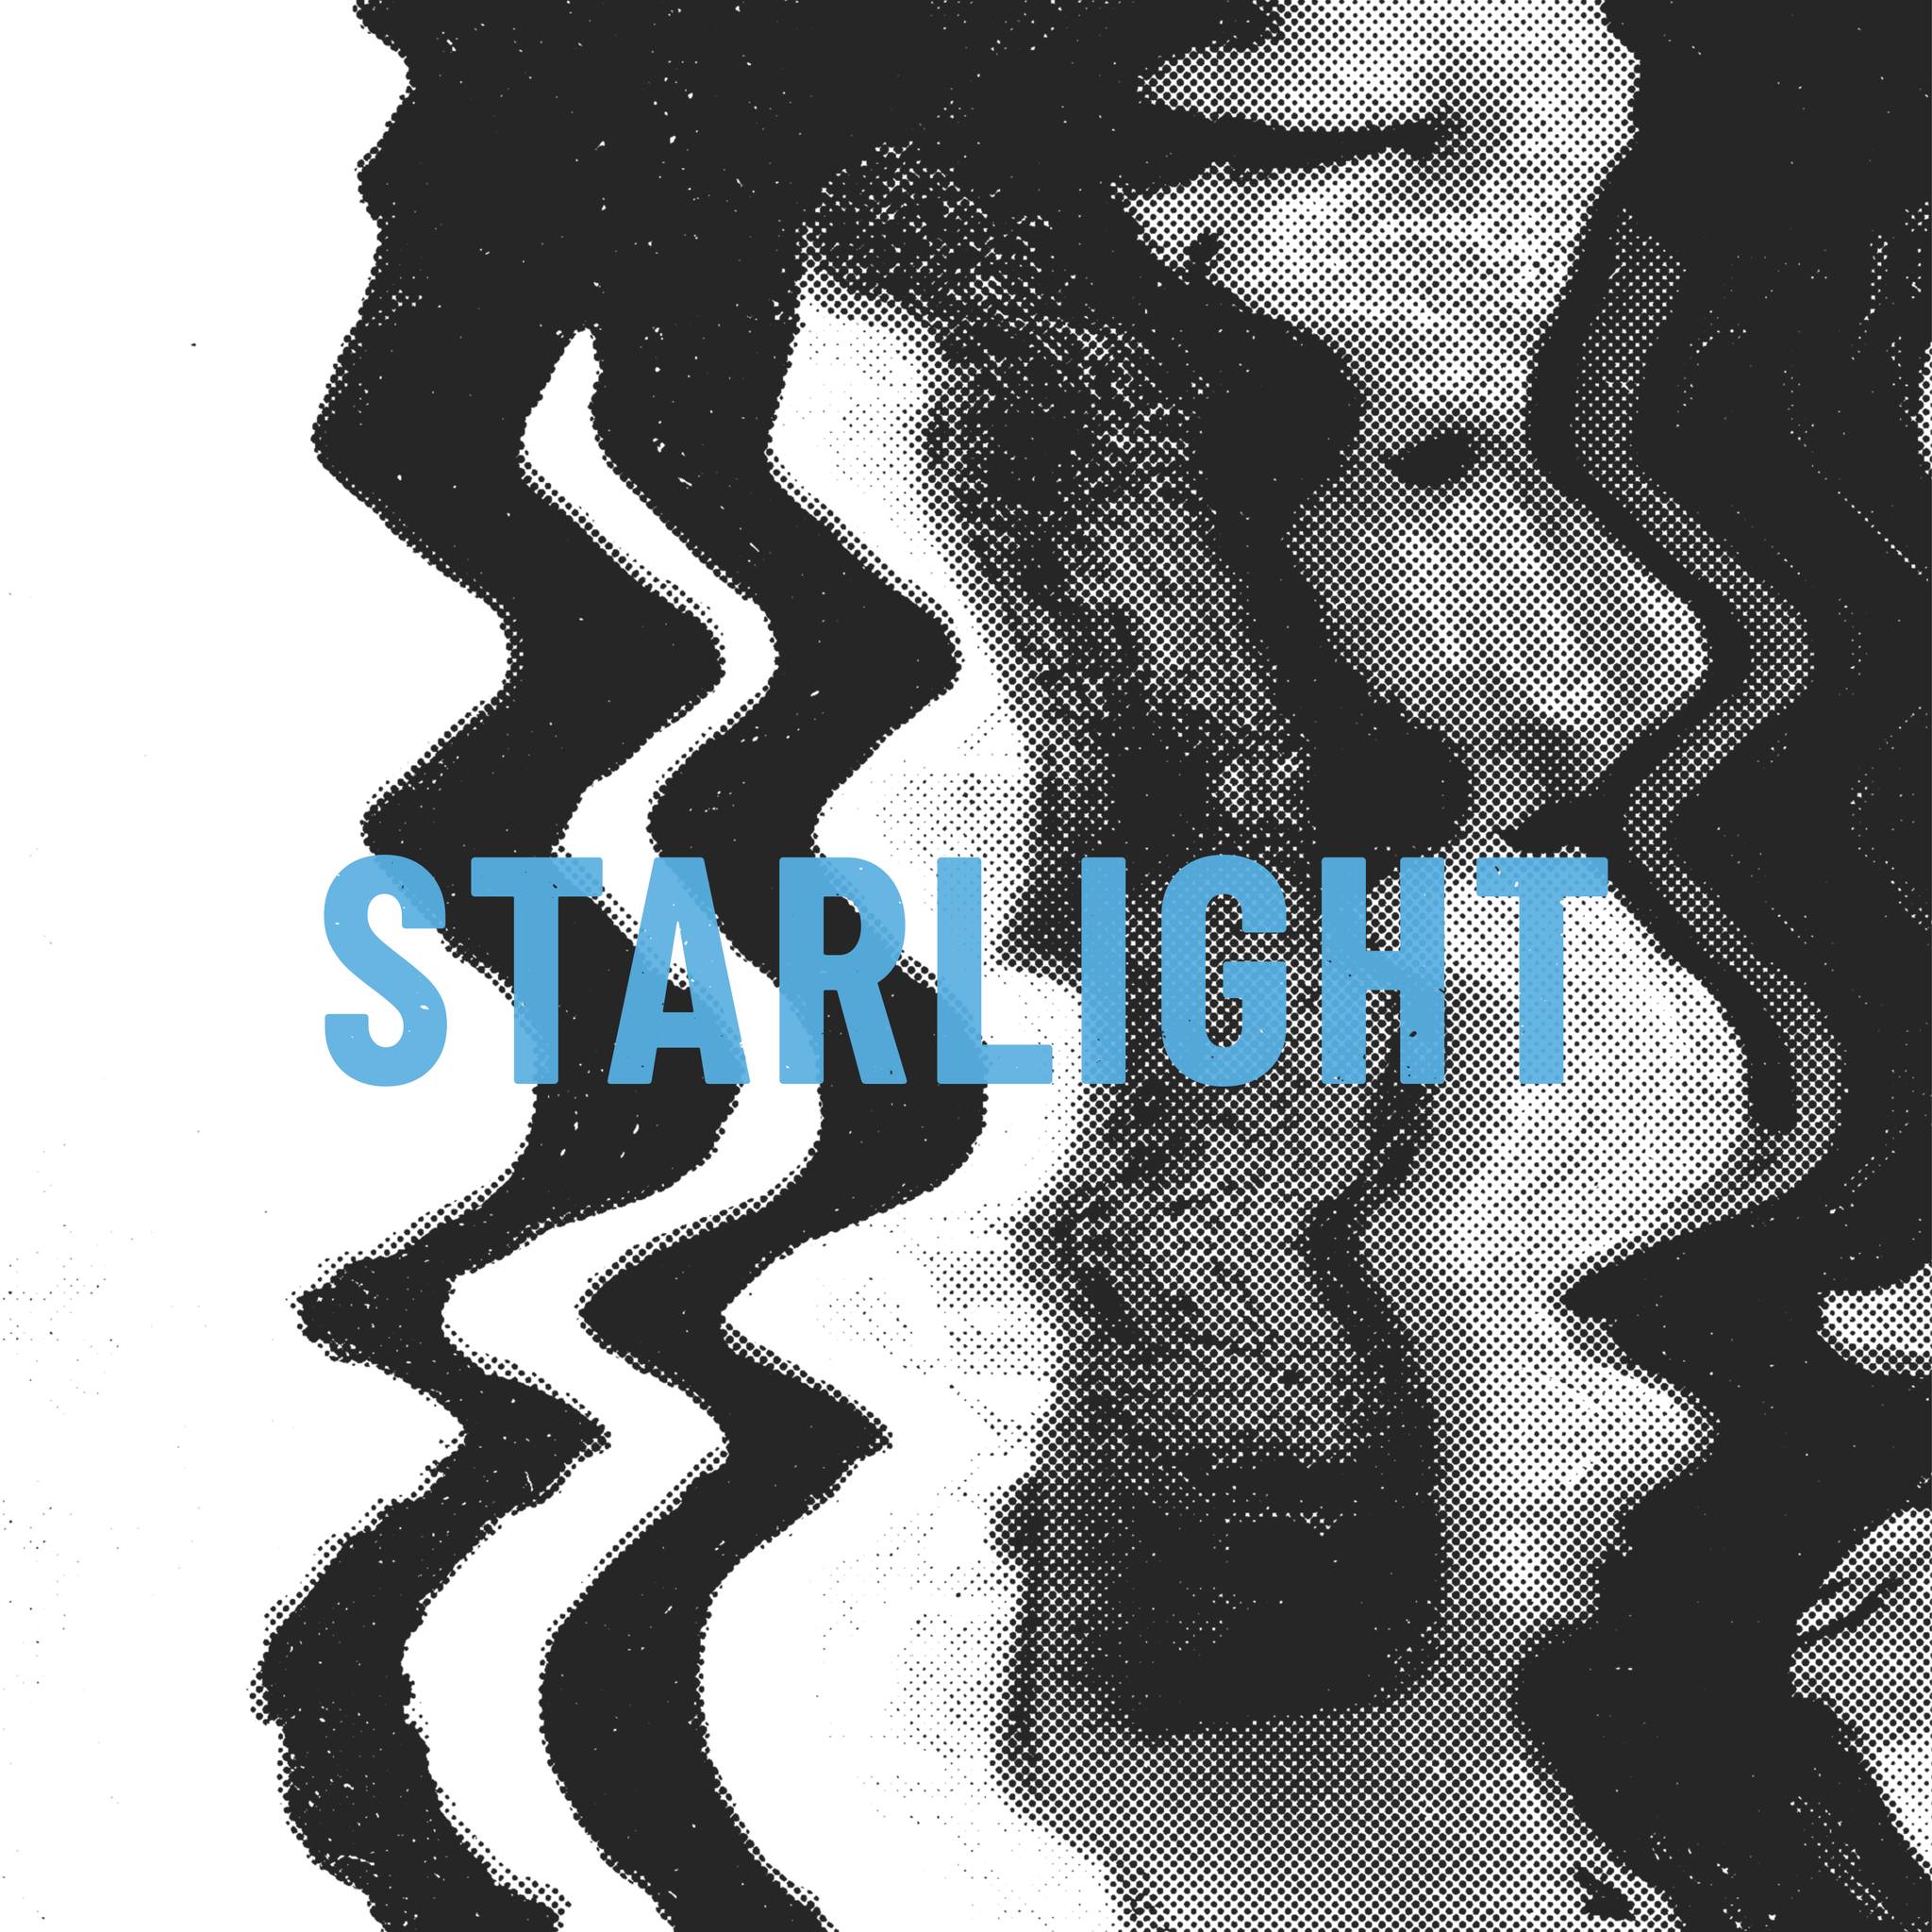 Amblare Starlight cover artwork